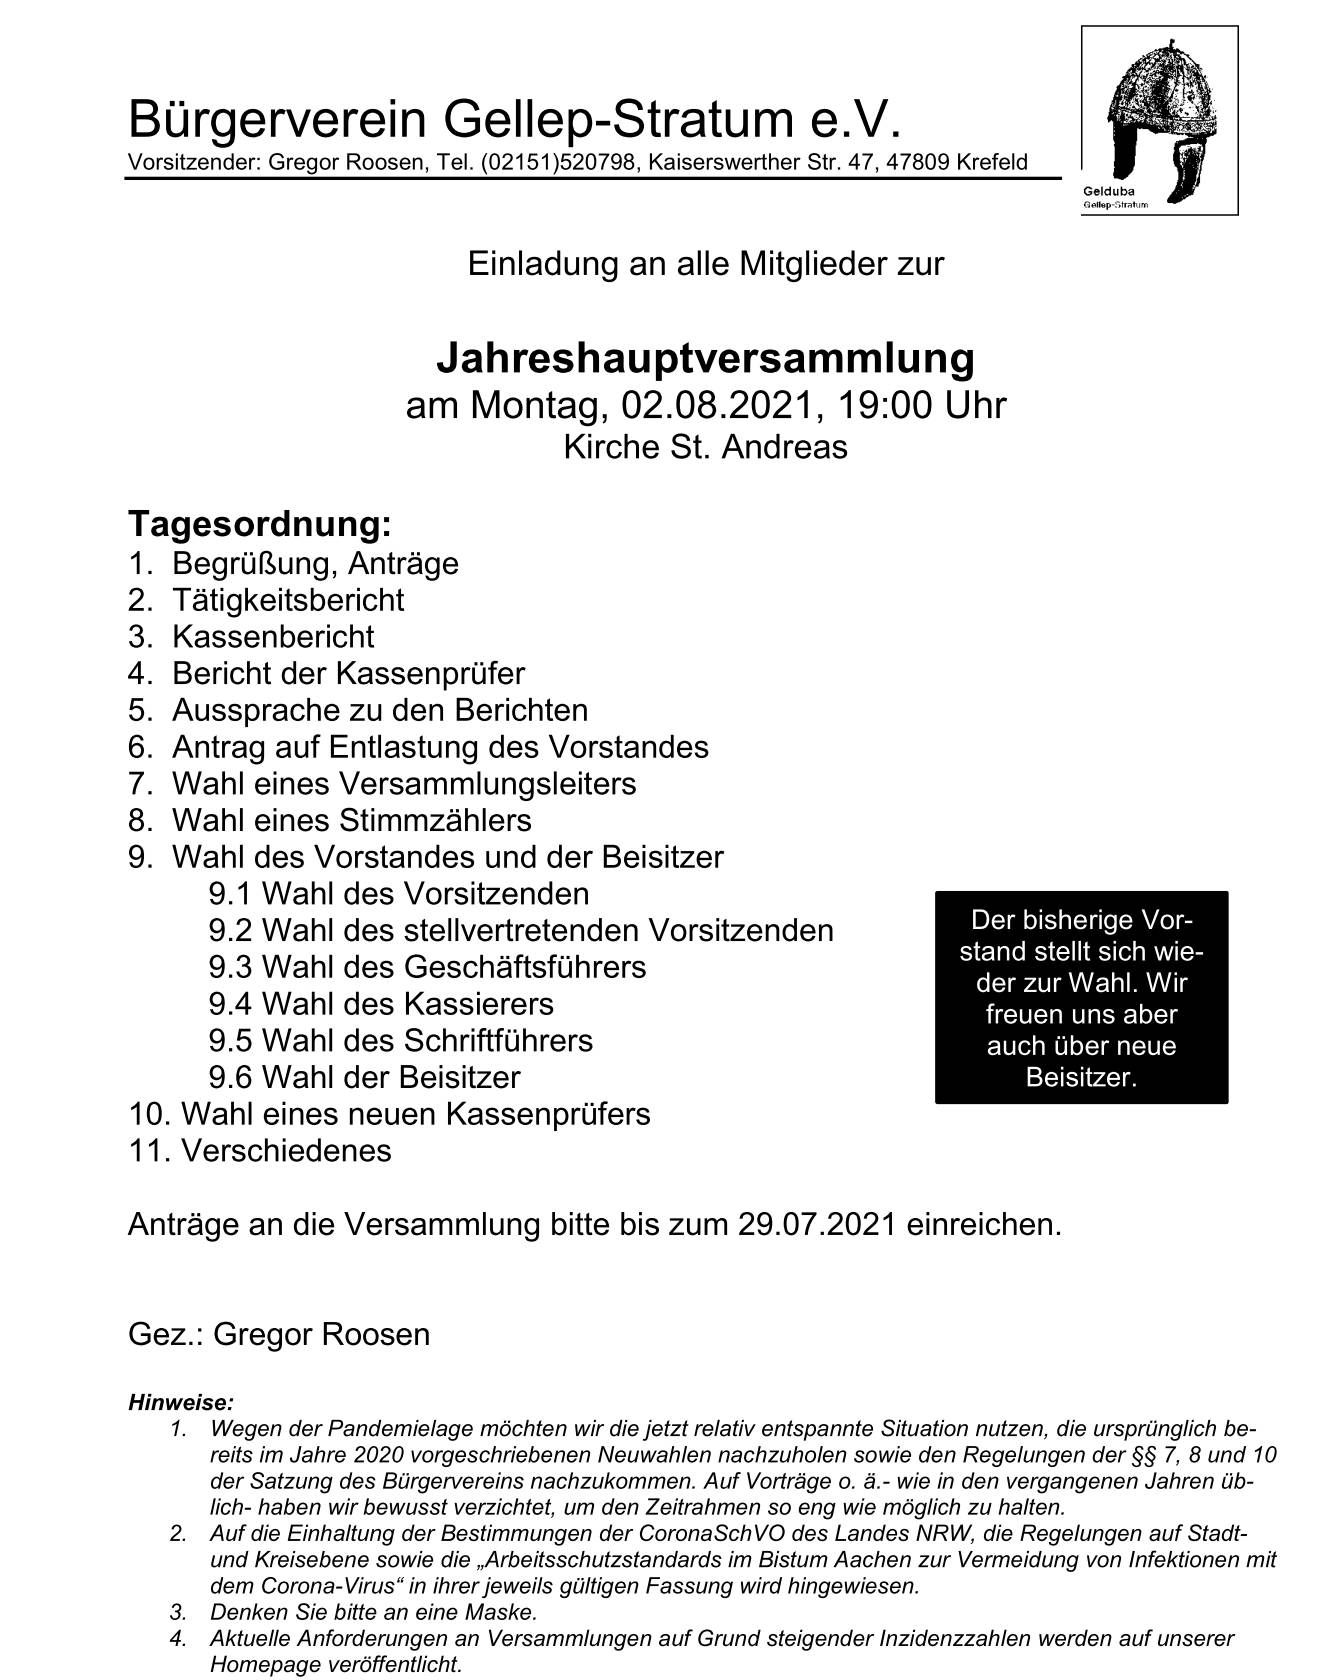 02.08.2021: Einlaung zur Jahreshauptversammlung des Bürgerverein Gellep-Stratum